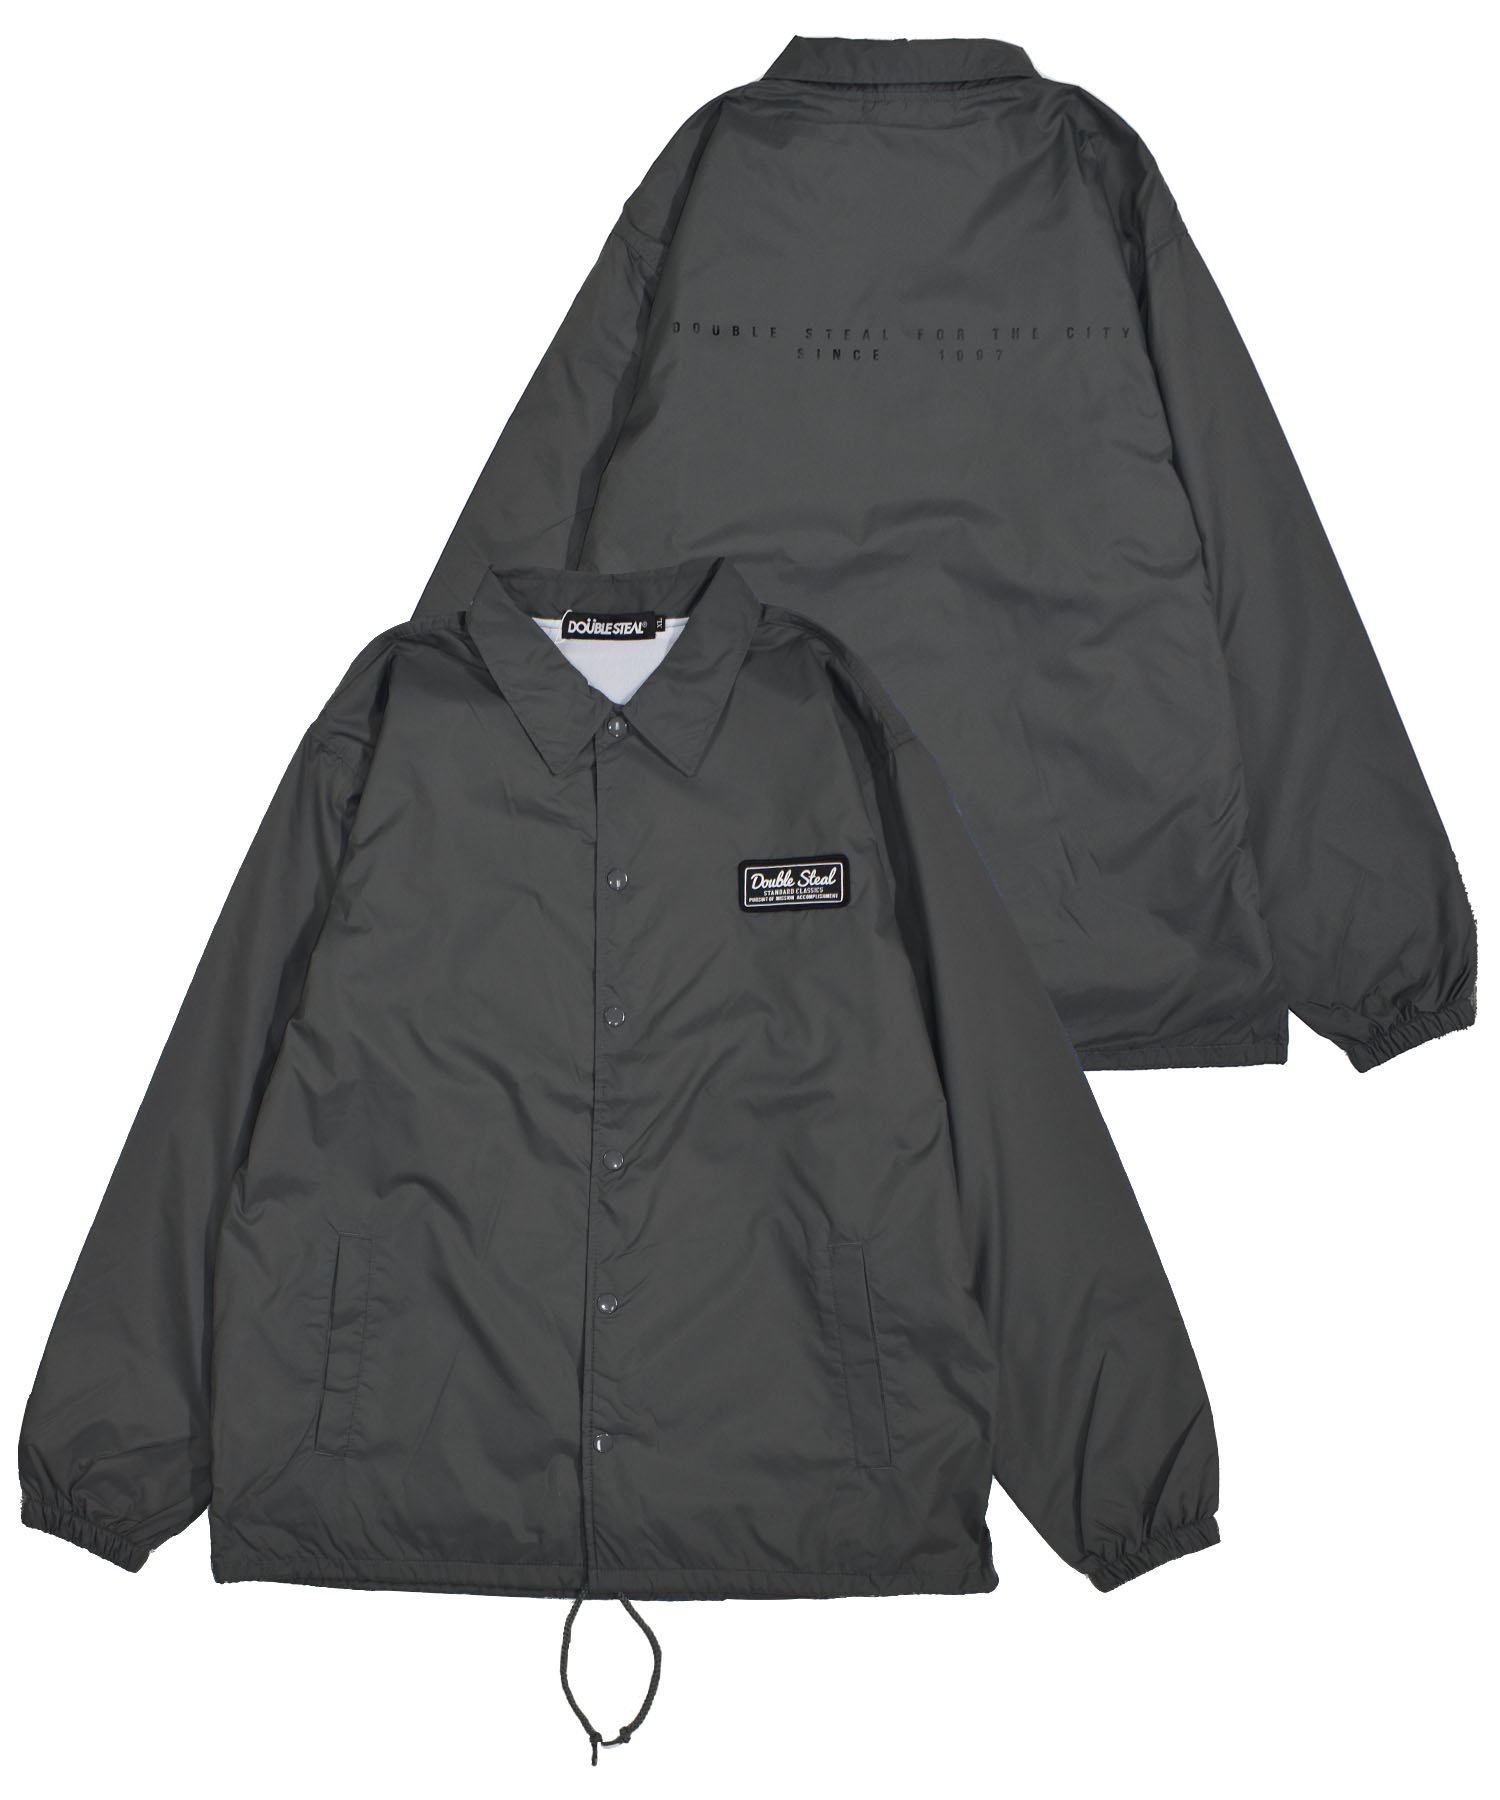 Square Patch Coache Jacket - DOUBLE STEAL ONLINE SHOP